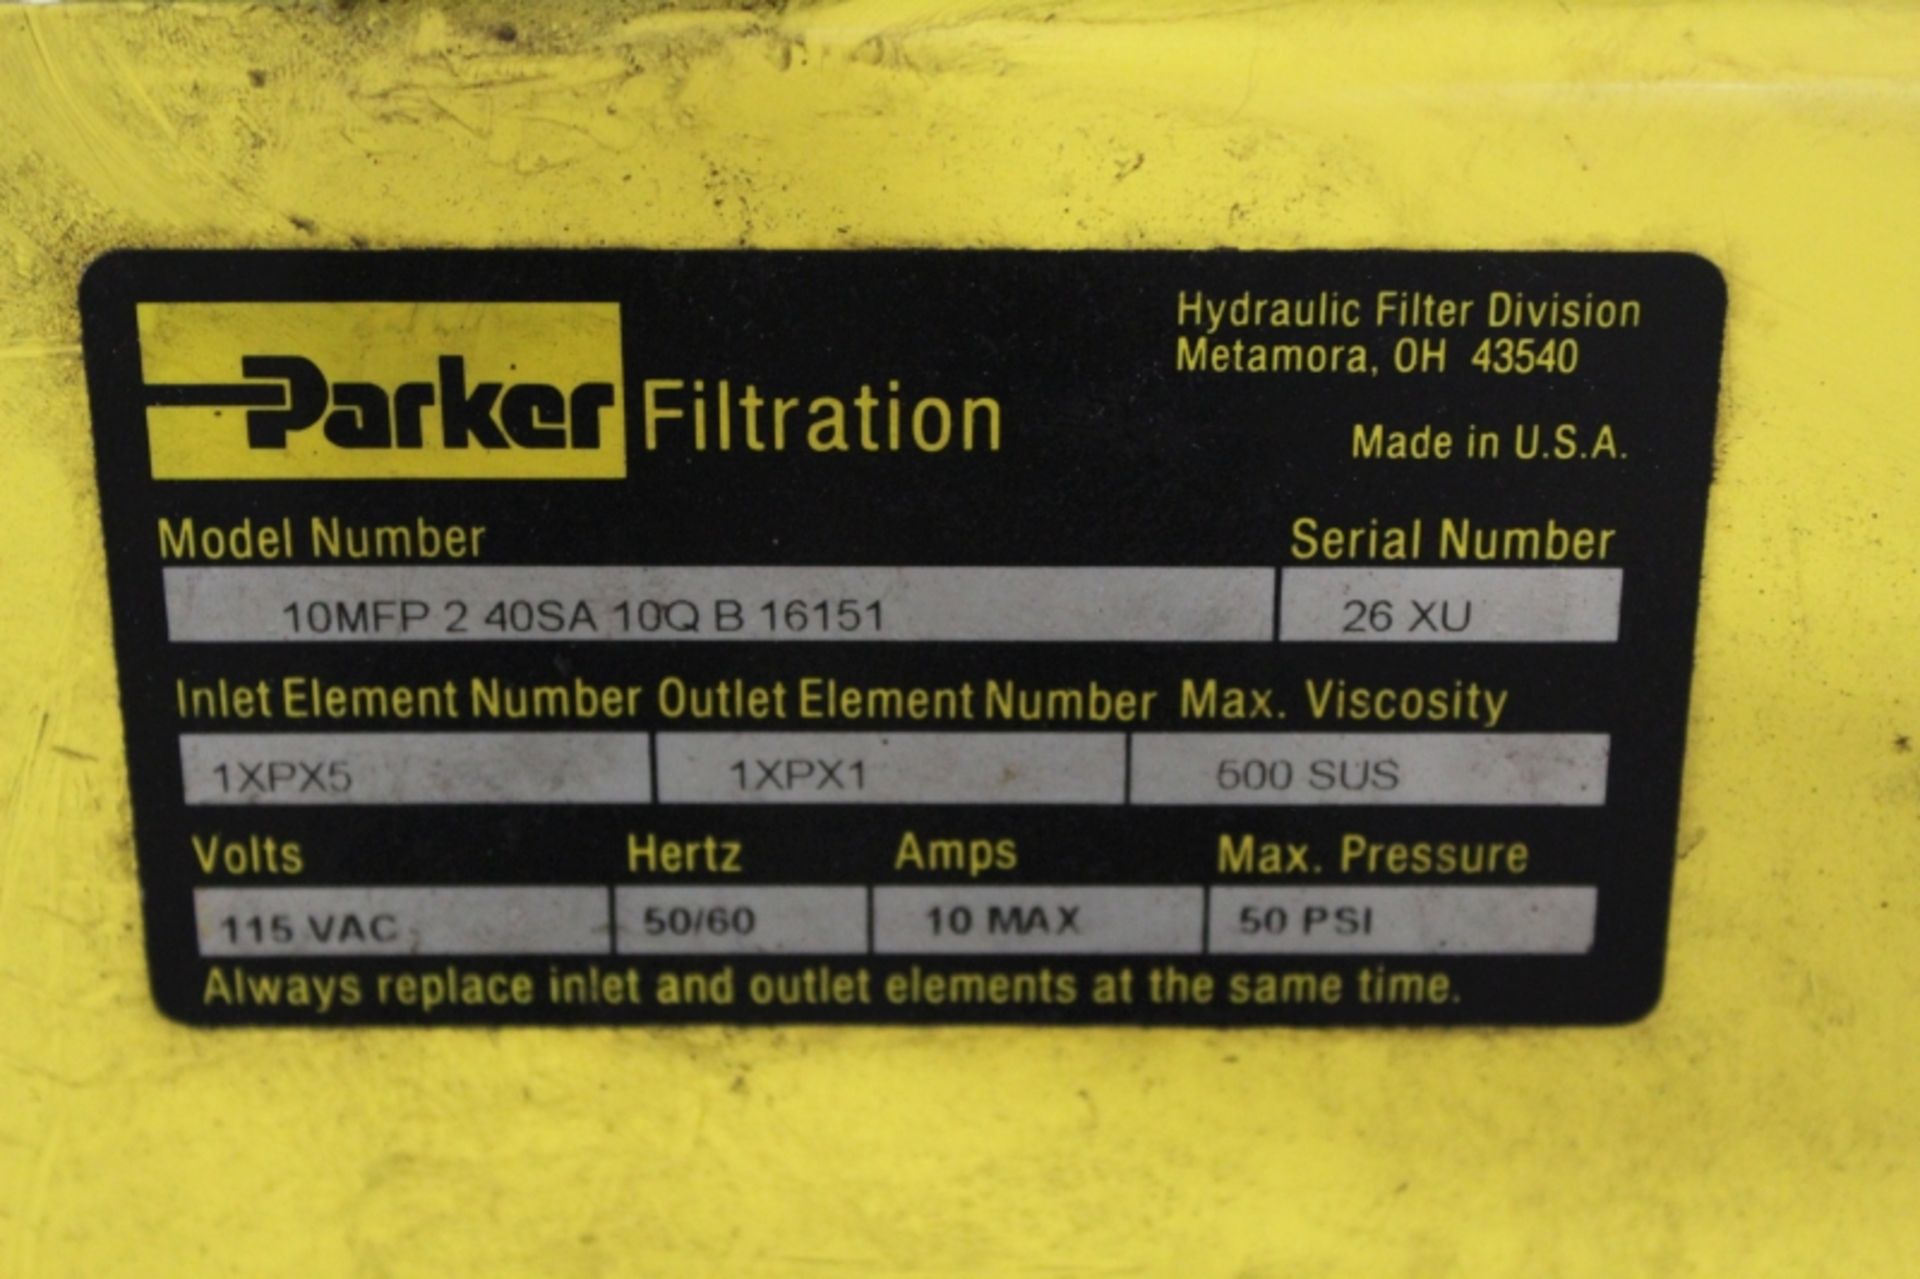 Parker Filtration 10MFP Oil Filter Cart, S/N 26XU - Image 3 of 3